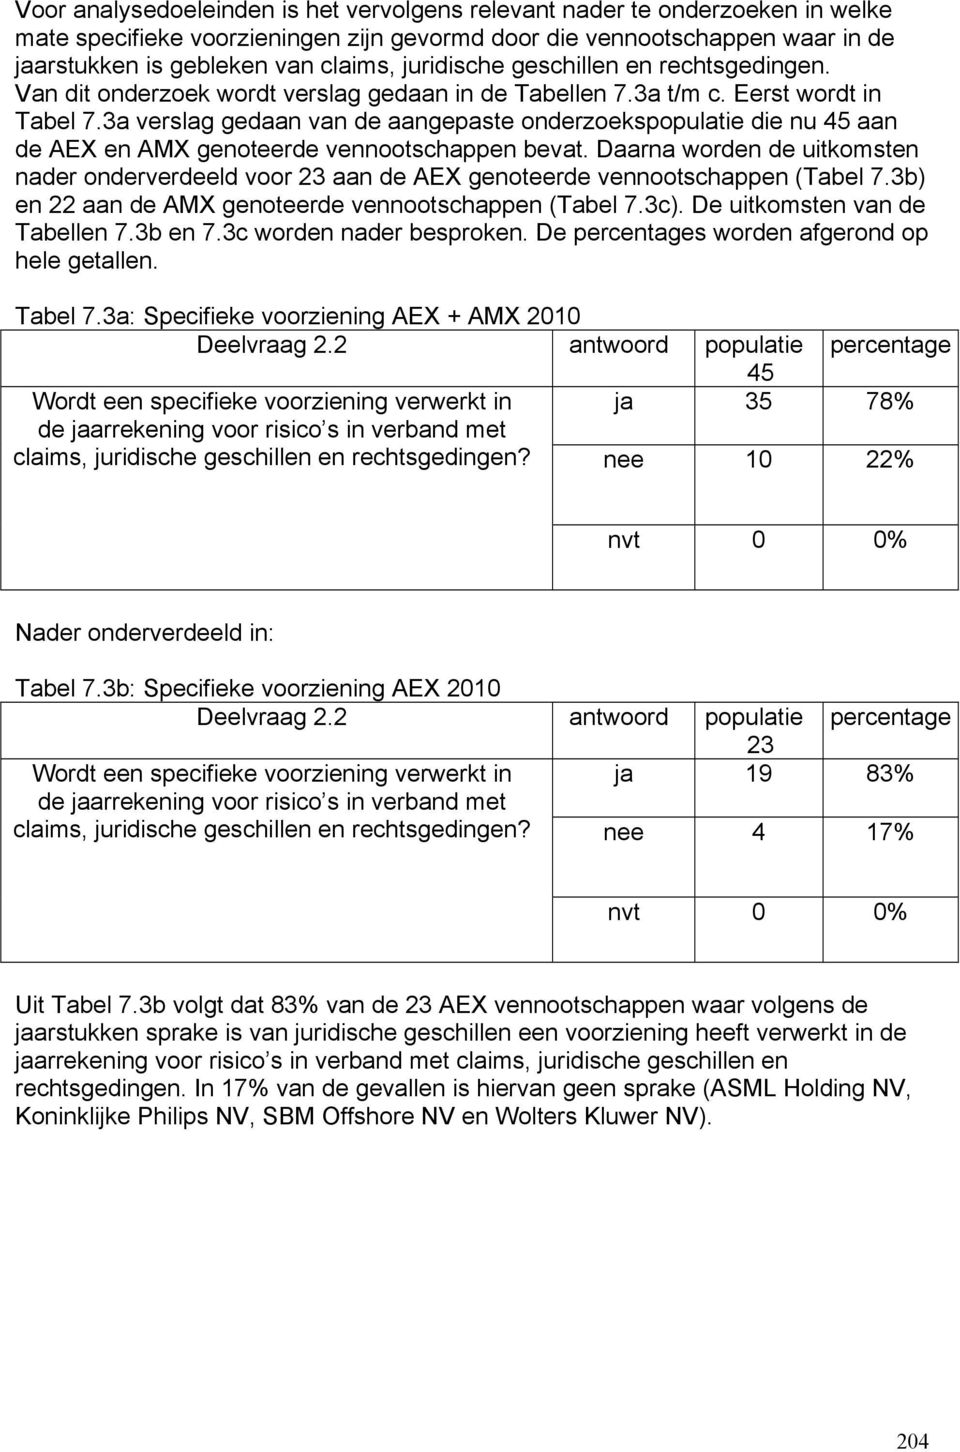 3a verslag gedaan van de aangepaste onderzoekspopulatie die nu 45 aan de AEX en AMX genoteerde vennootschappen bevat.